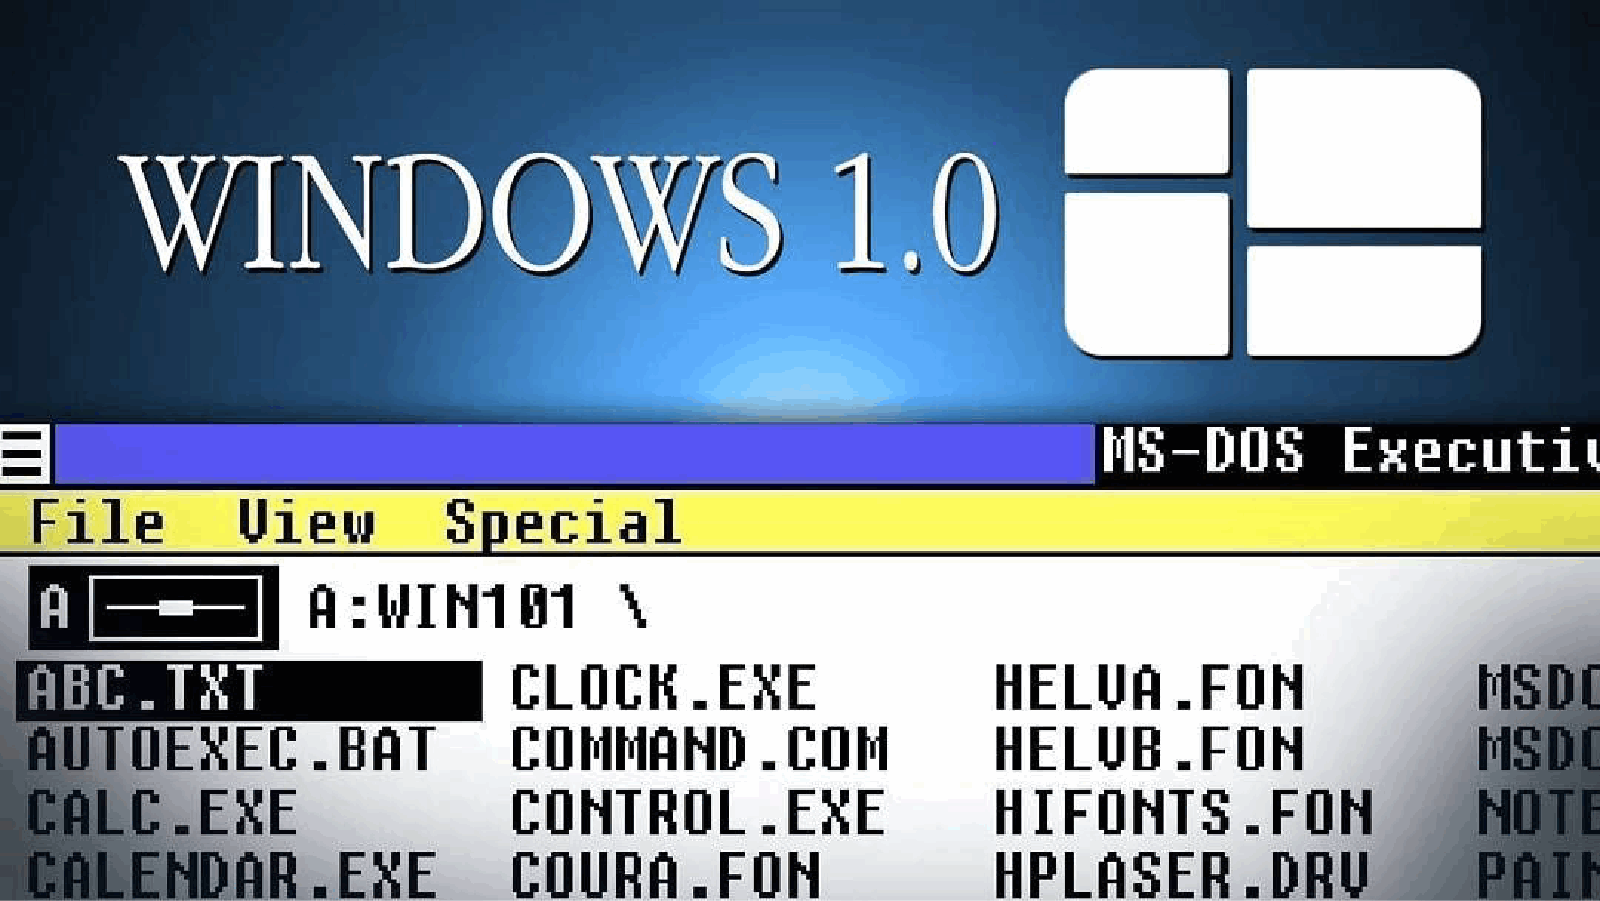 Когда появился виндовс. Microsoft Windows 1985. Как выглядит виндовс 1.0. Windows 1.0 1985. Самая первая версия Windows.